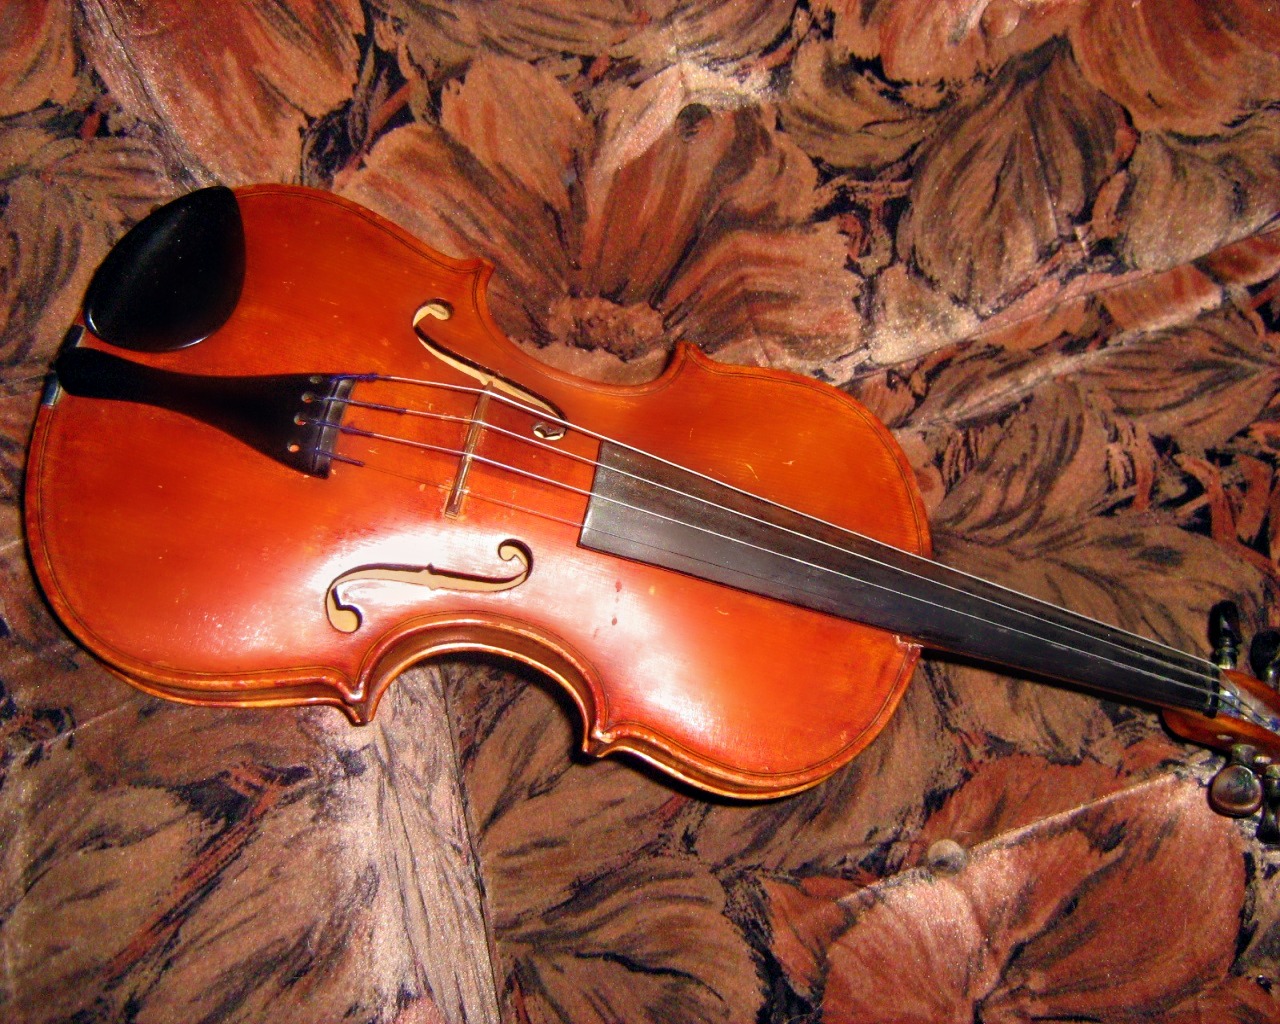 Beautiful Violin Wallpaper